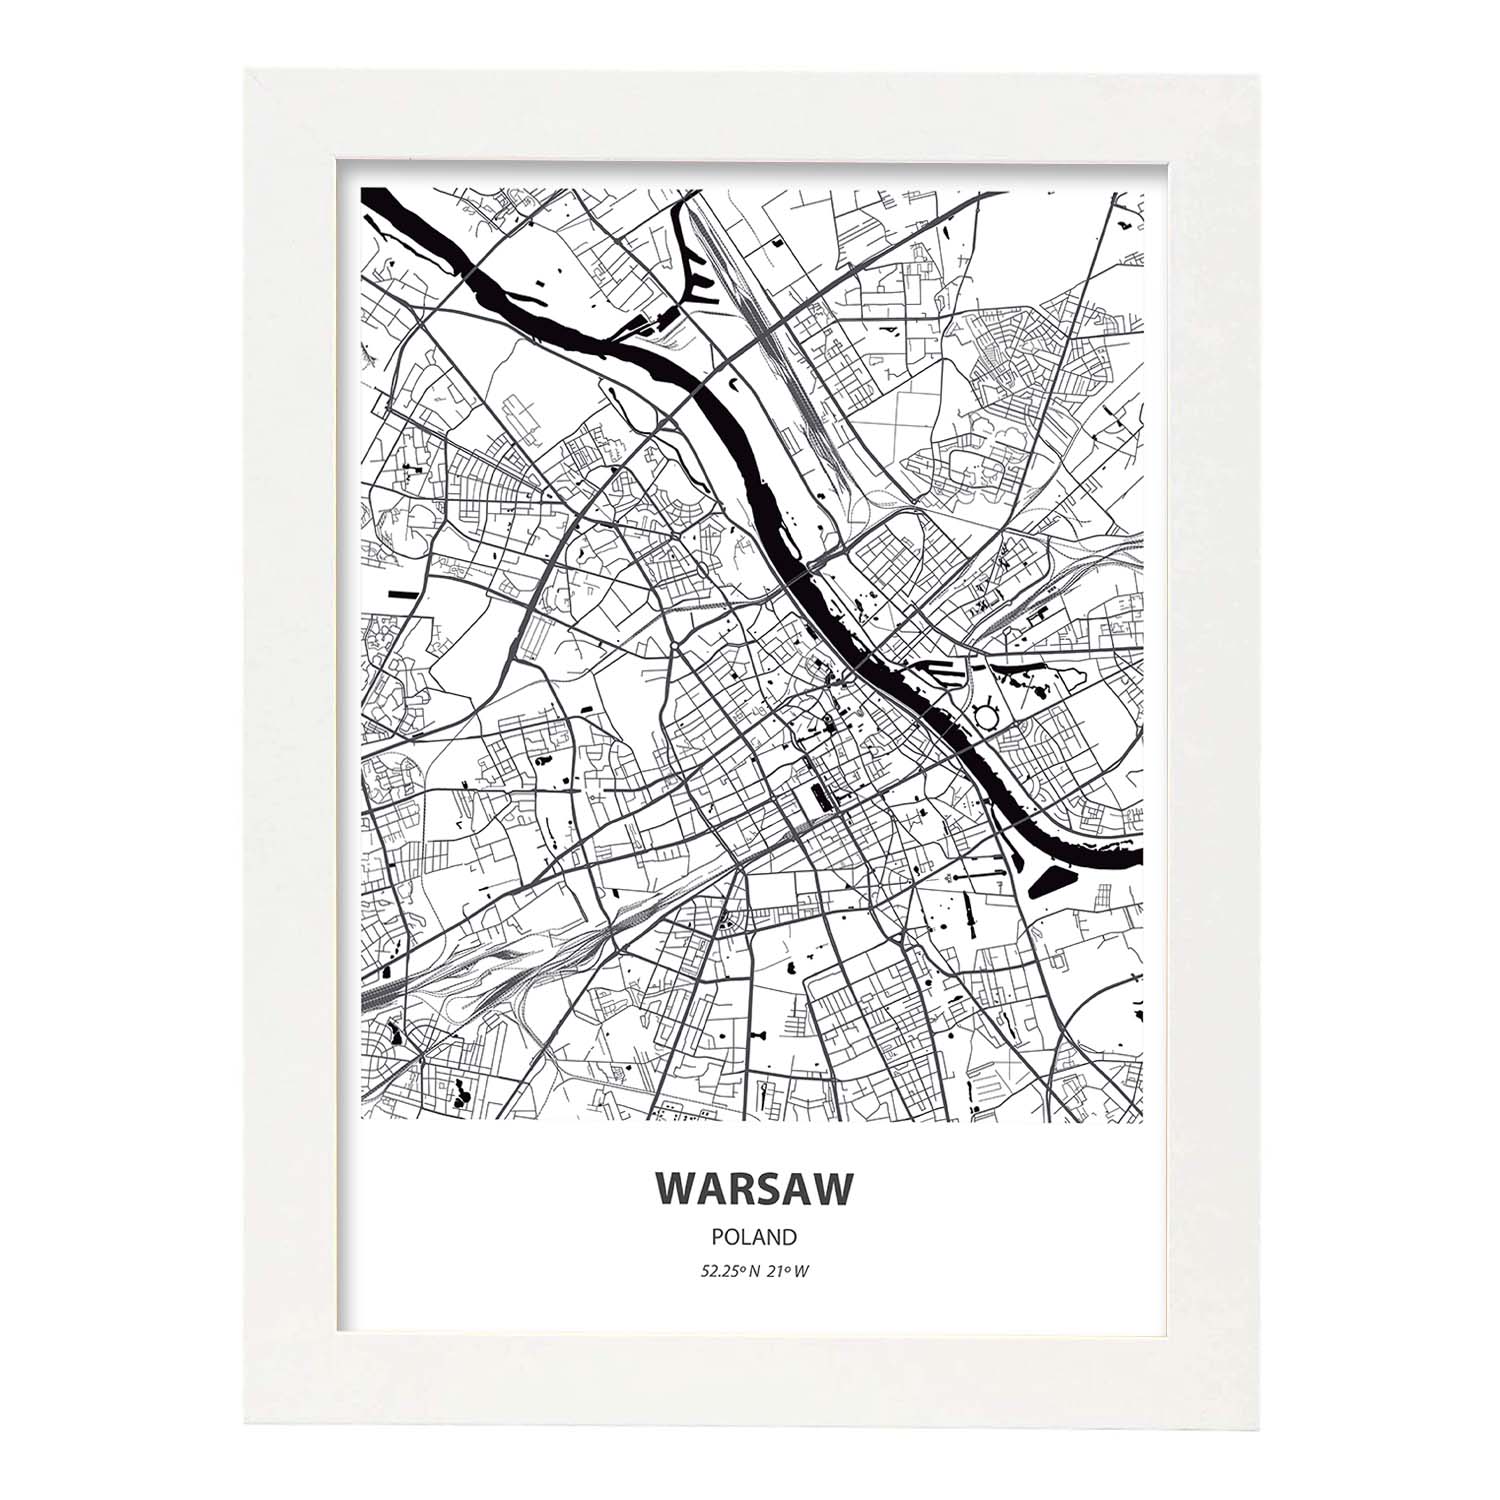 Poster con mapa de Warsaw - Polonia. Láminas de ciudades de Europa con mares y ríos en color negro.-Artwork-Nacnic-A4-Marco Blanco-Nacnic Estudio SL